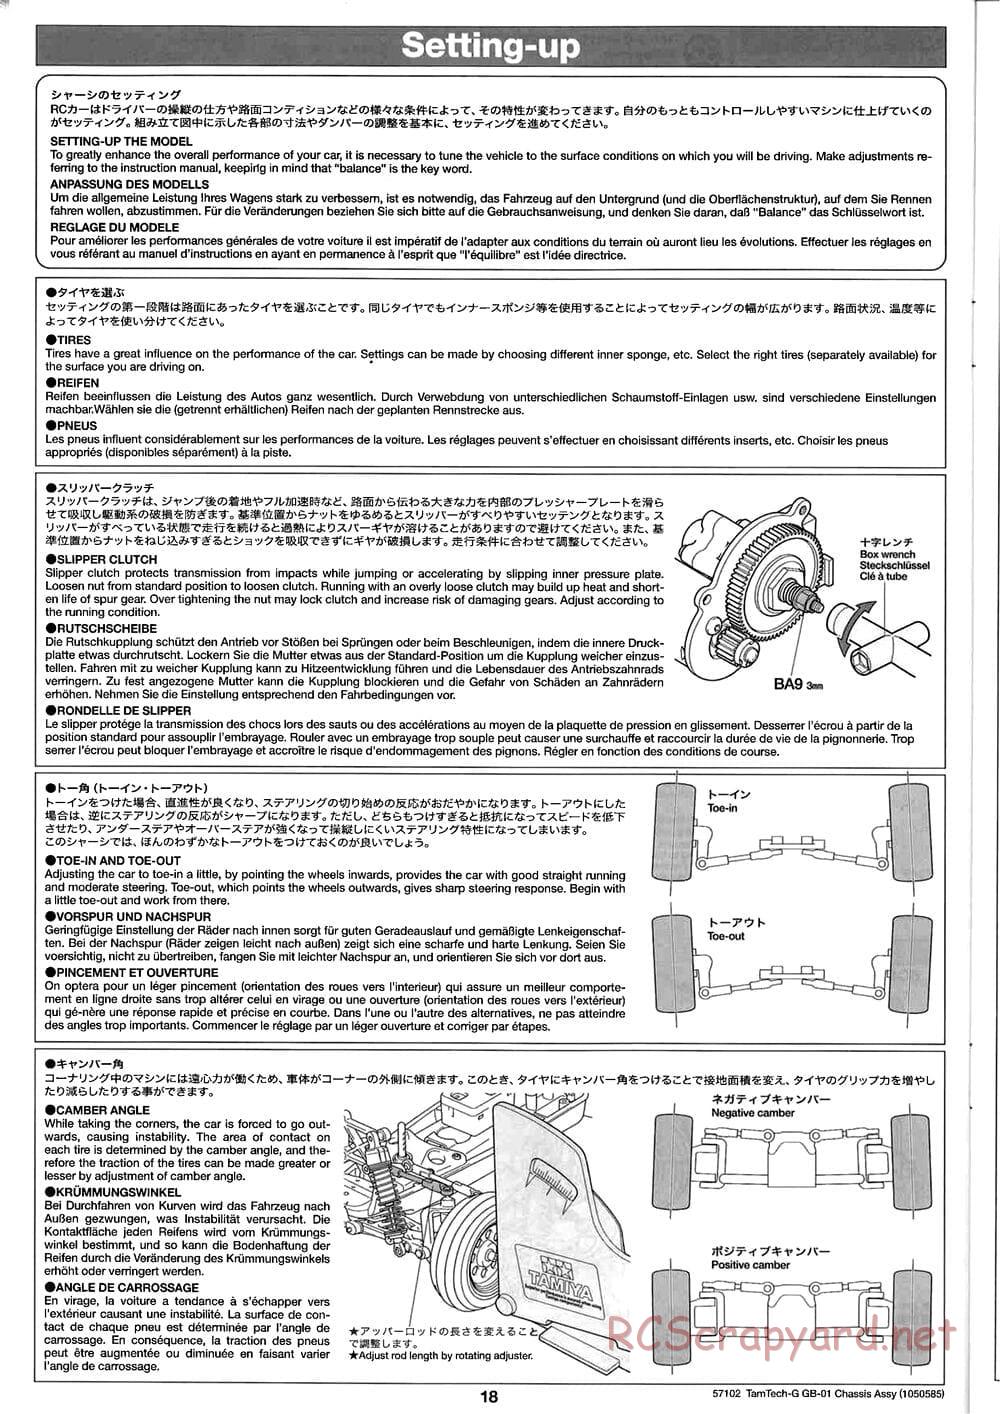 Tamiya - GB-01 Chassis - Manual - Page 18